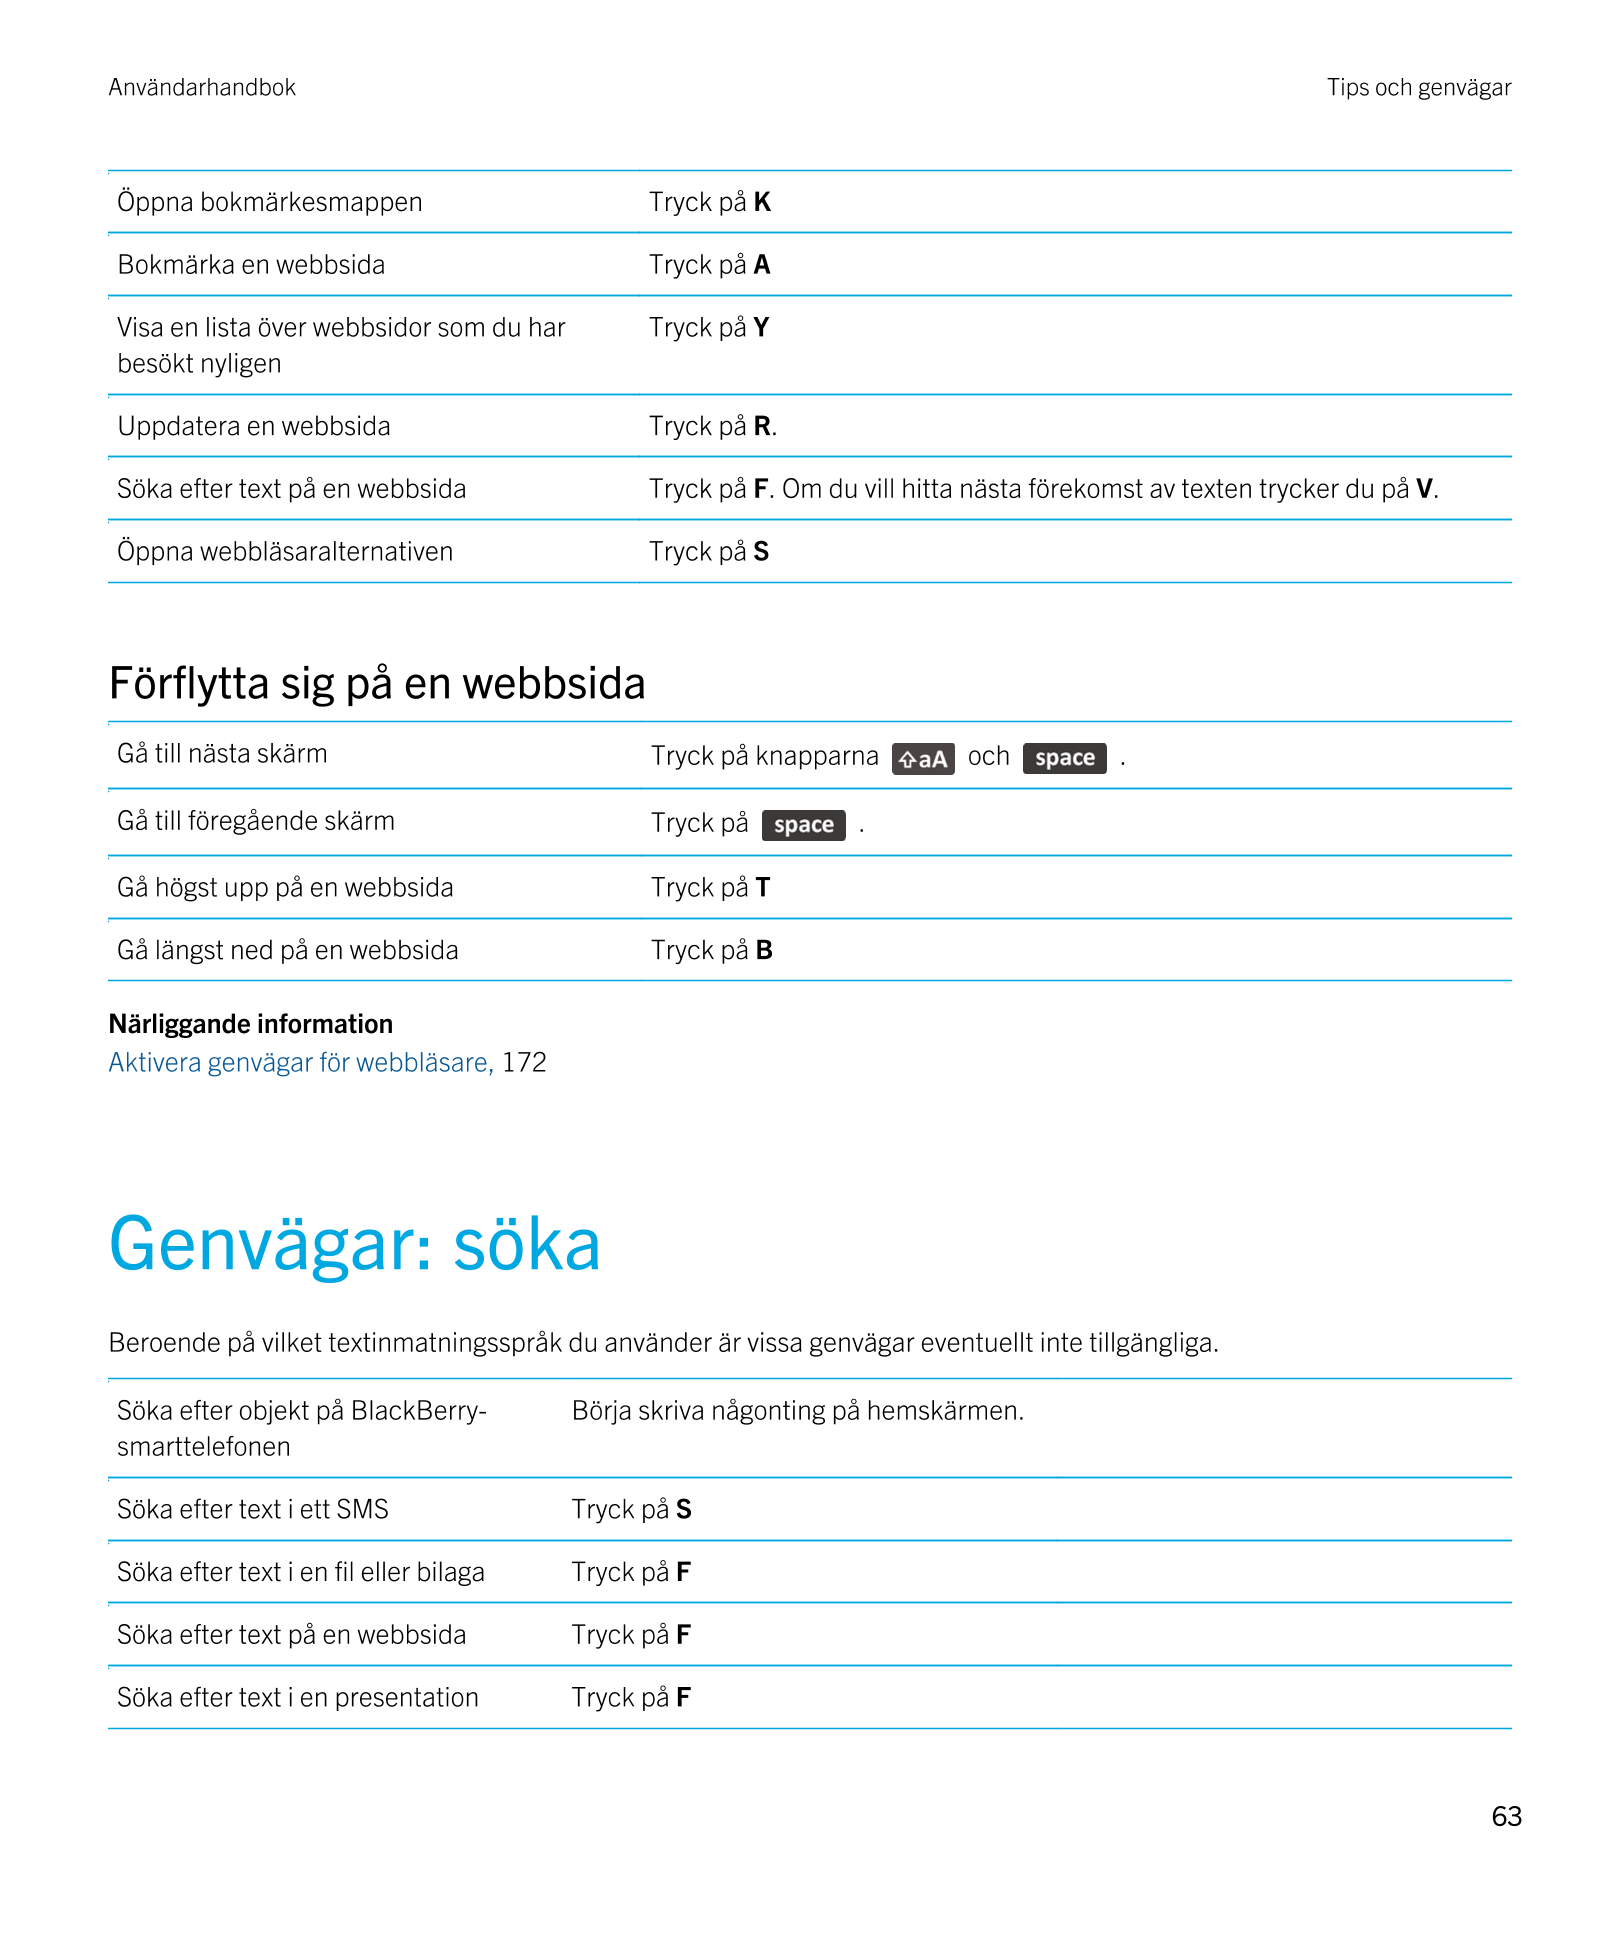 Användarhandbok Tips och genvägar
Öppna bokmärkesmappen Tryck på  K
Bokmärka en webbsida Tryck på  A
Visa en lista över webbsido